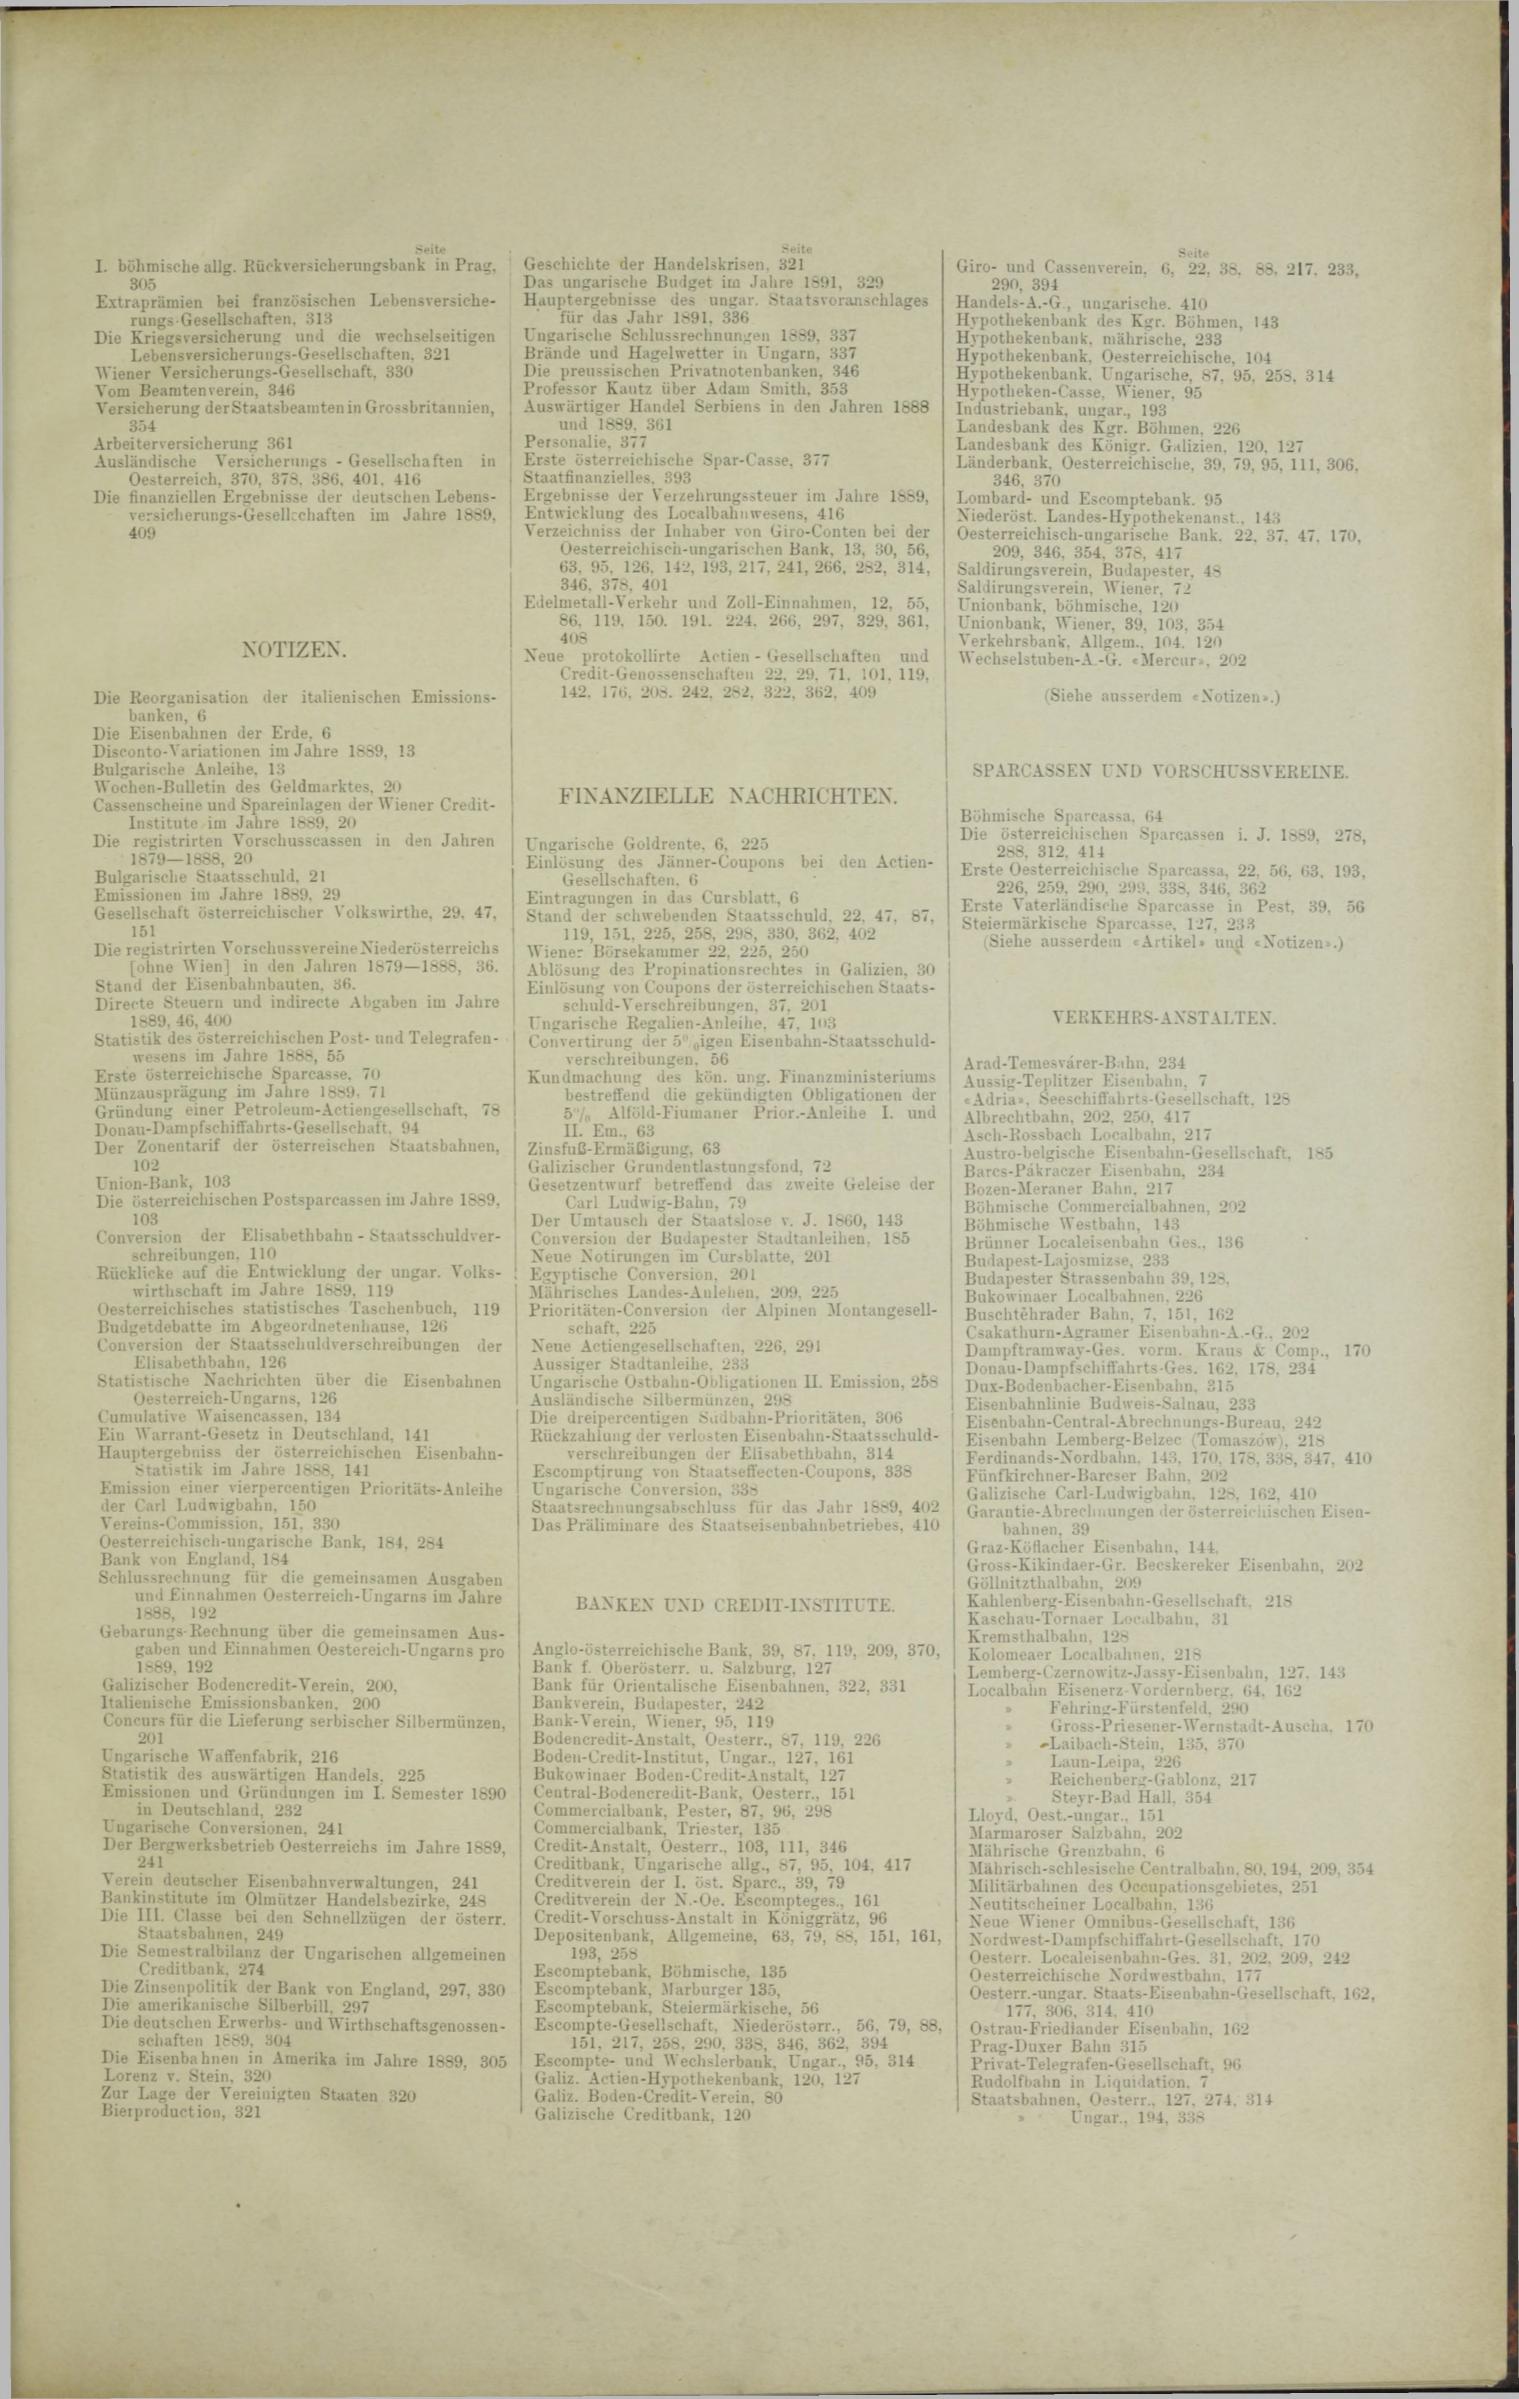 Der Tresor 12.06.1890 - Seite 11